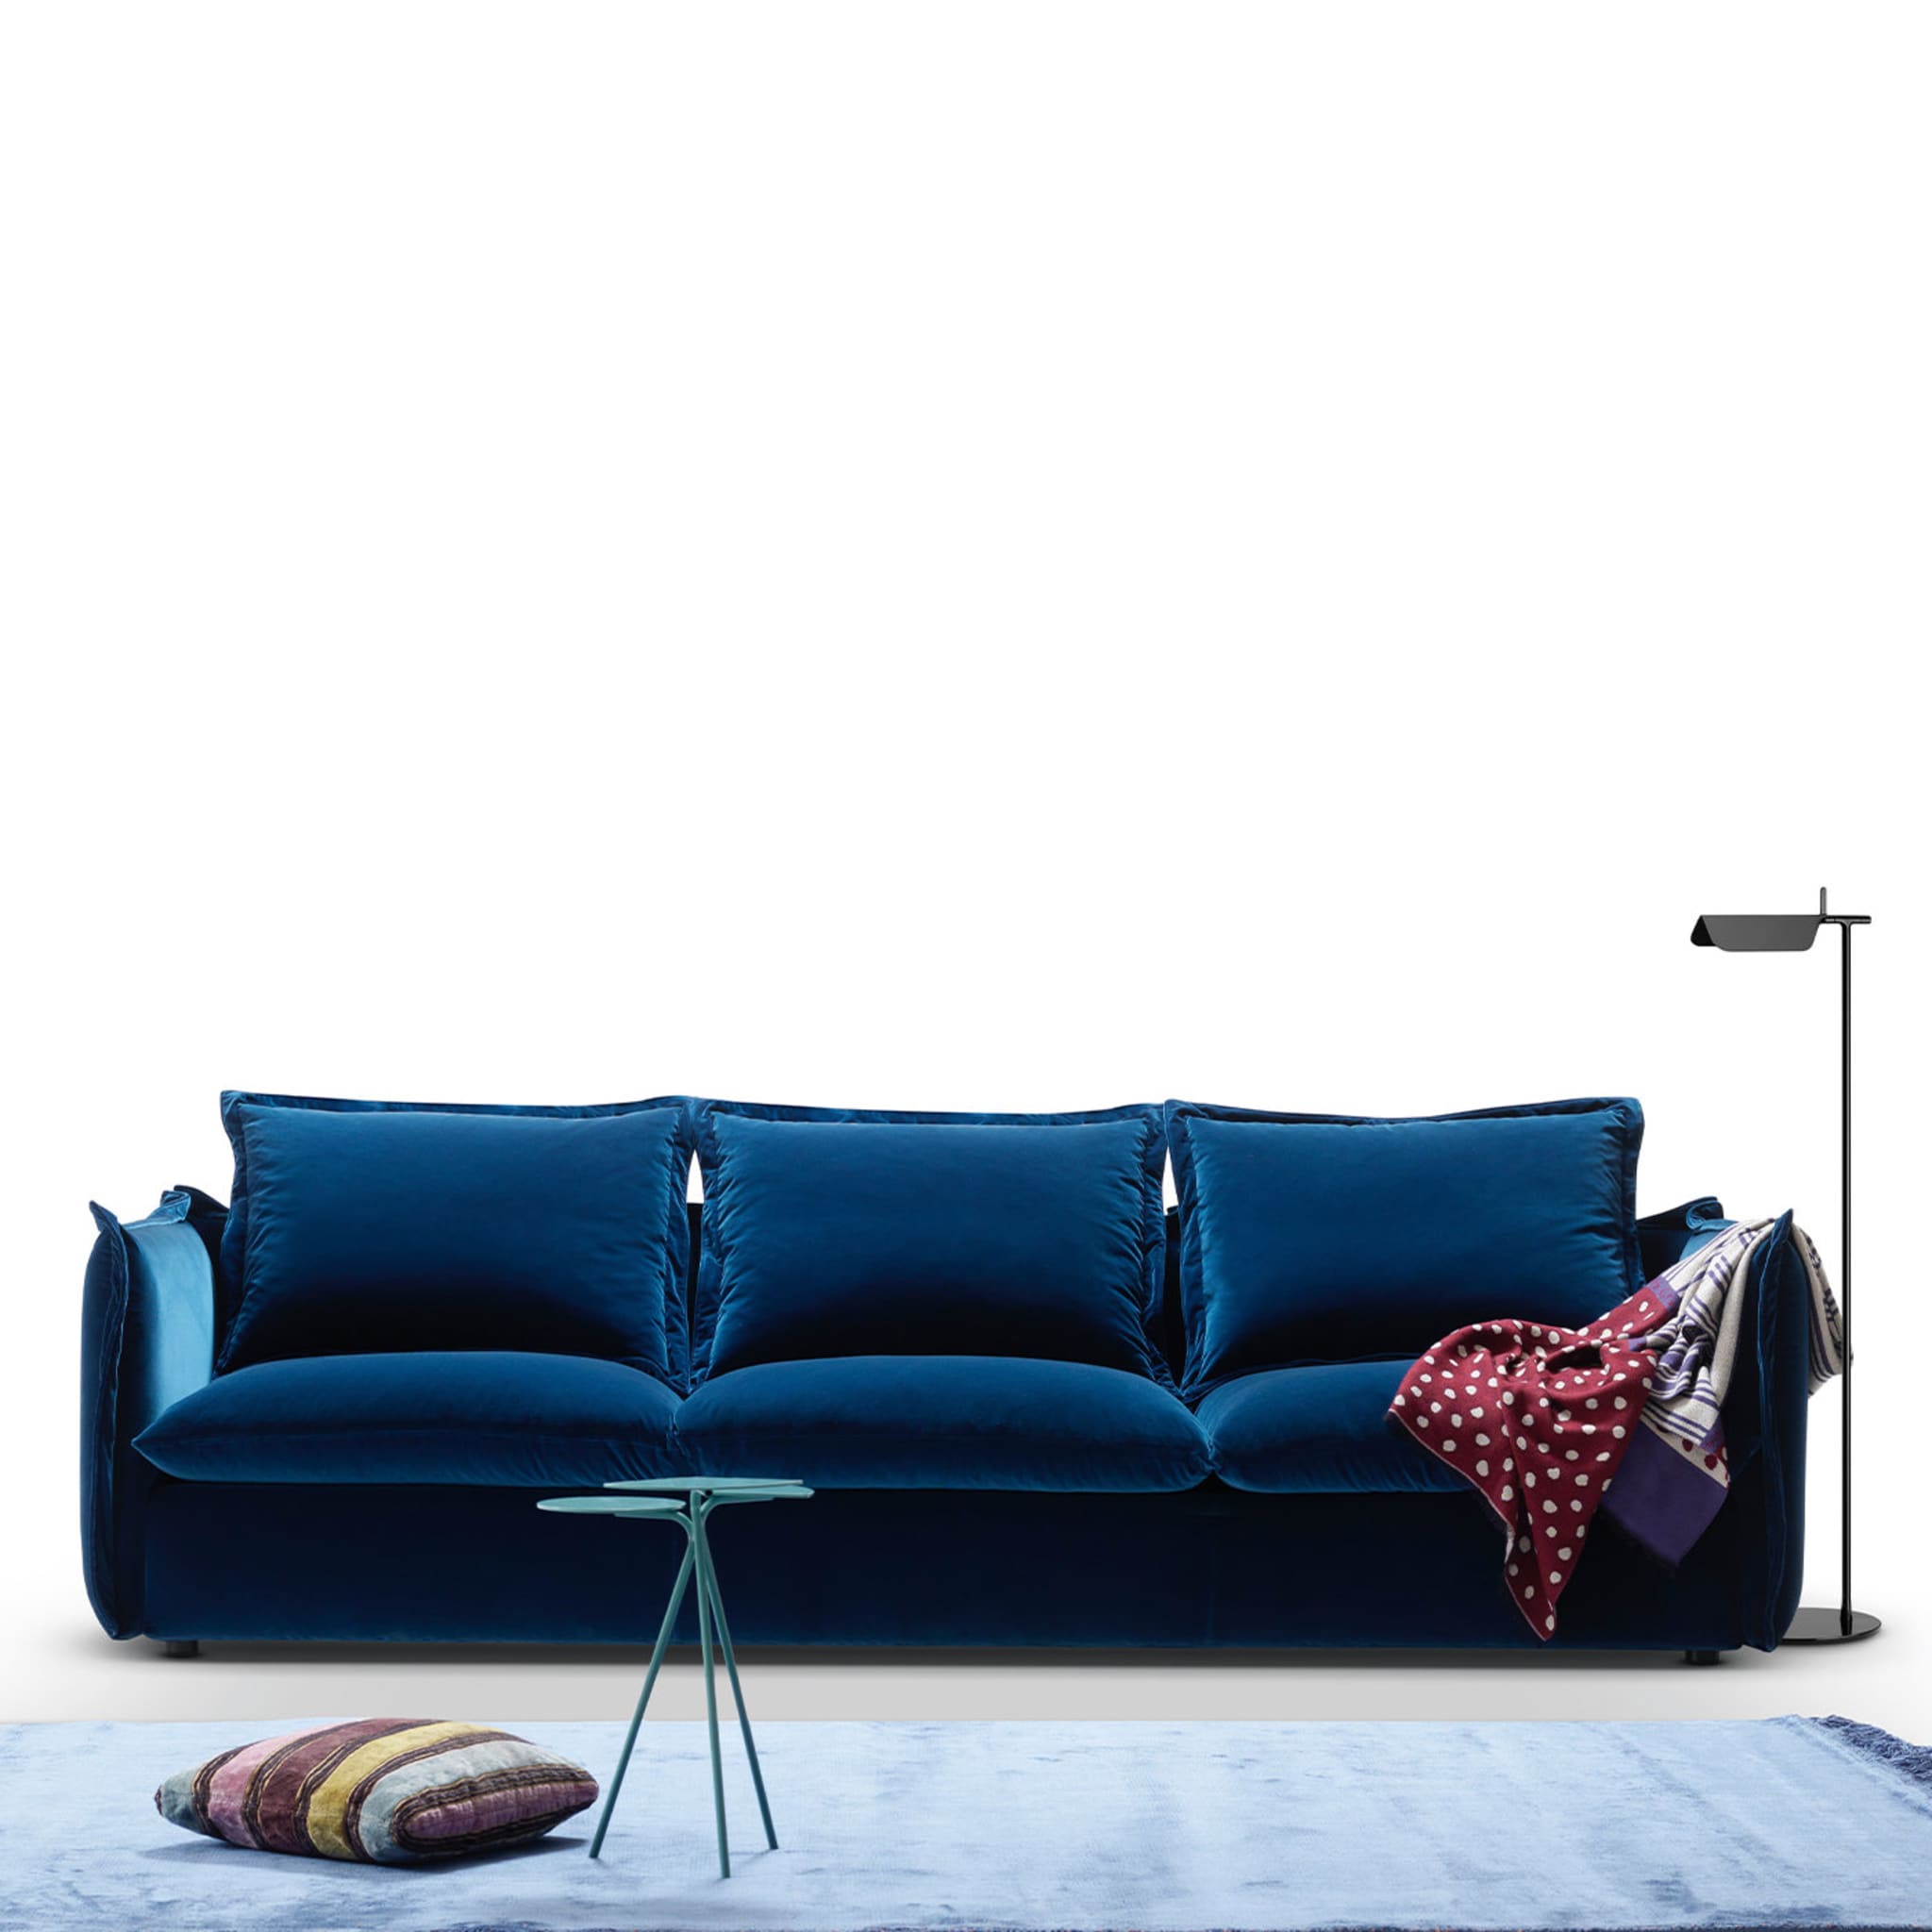 Knit Midnight-Blue Sofa by Enrico Cesana - Alternative view 1